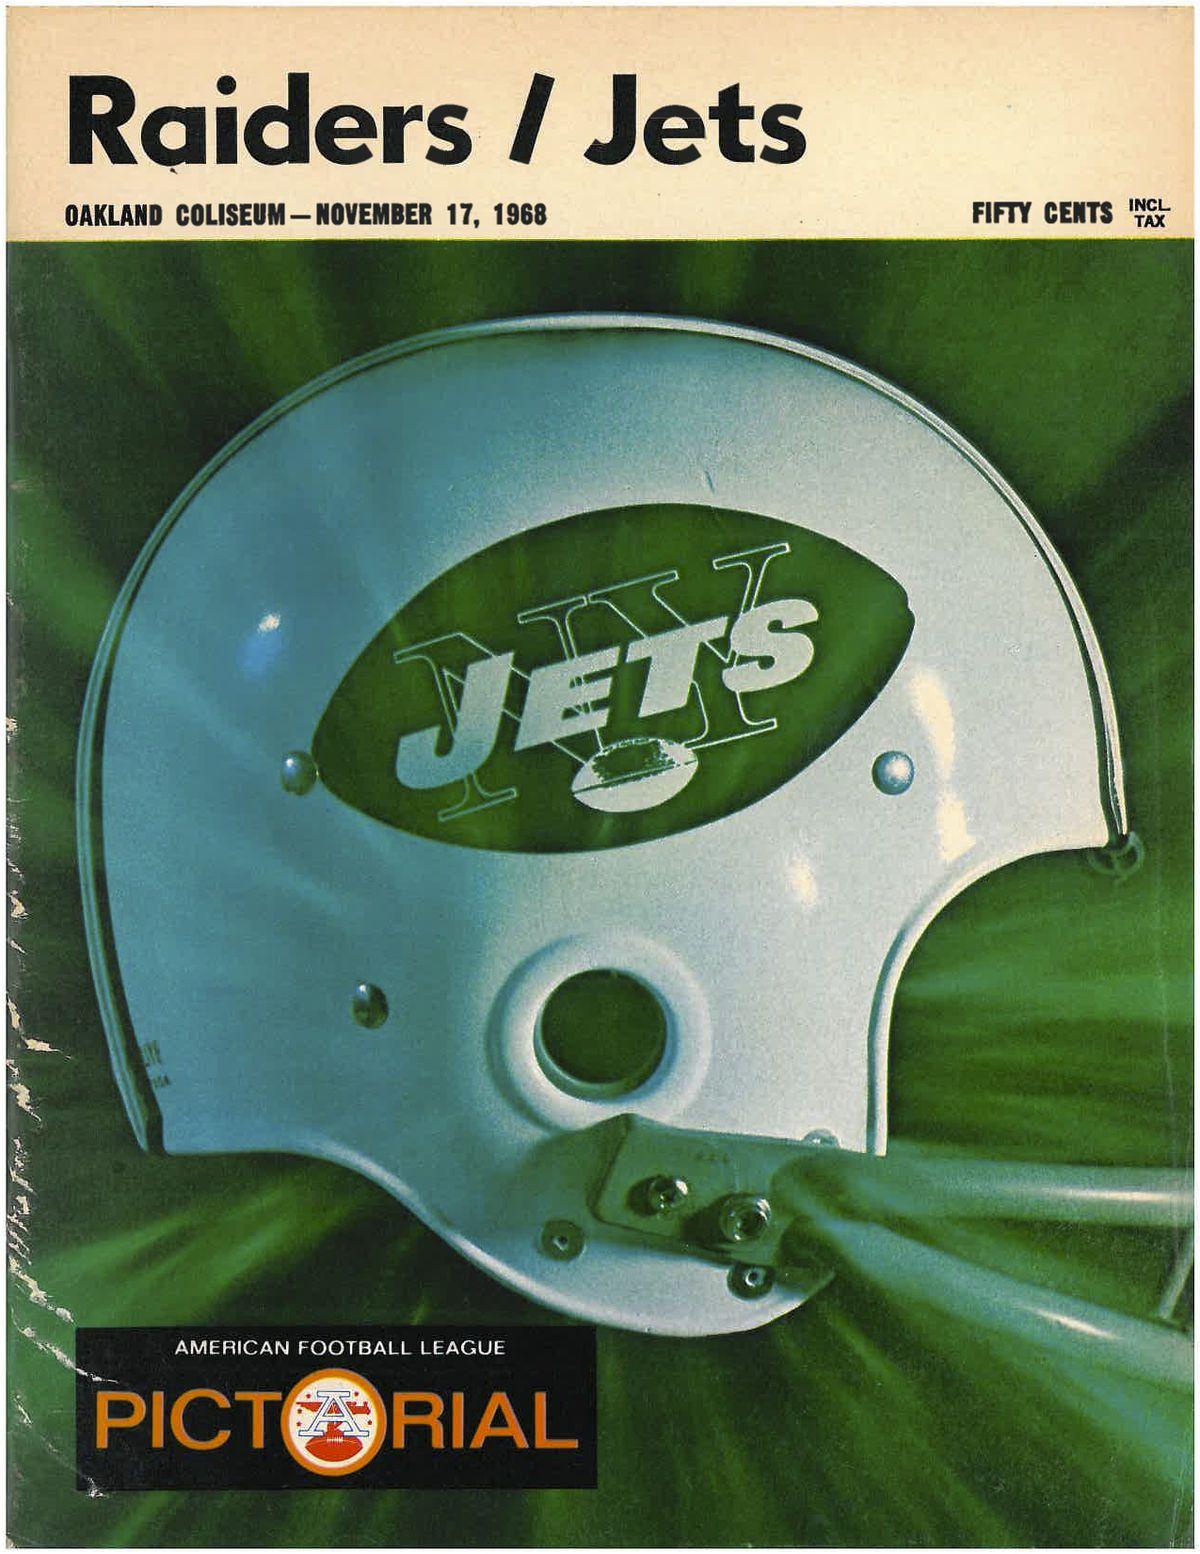 NY Jets Old Logo - History of the New York Jets